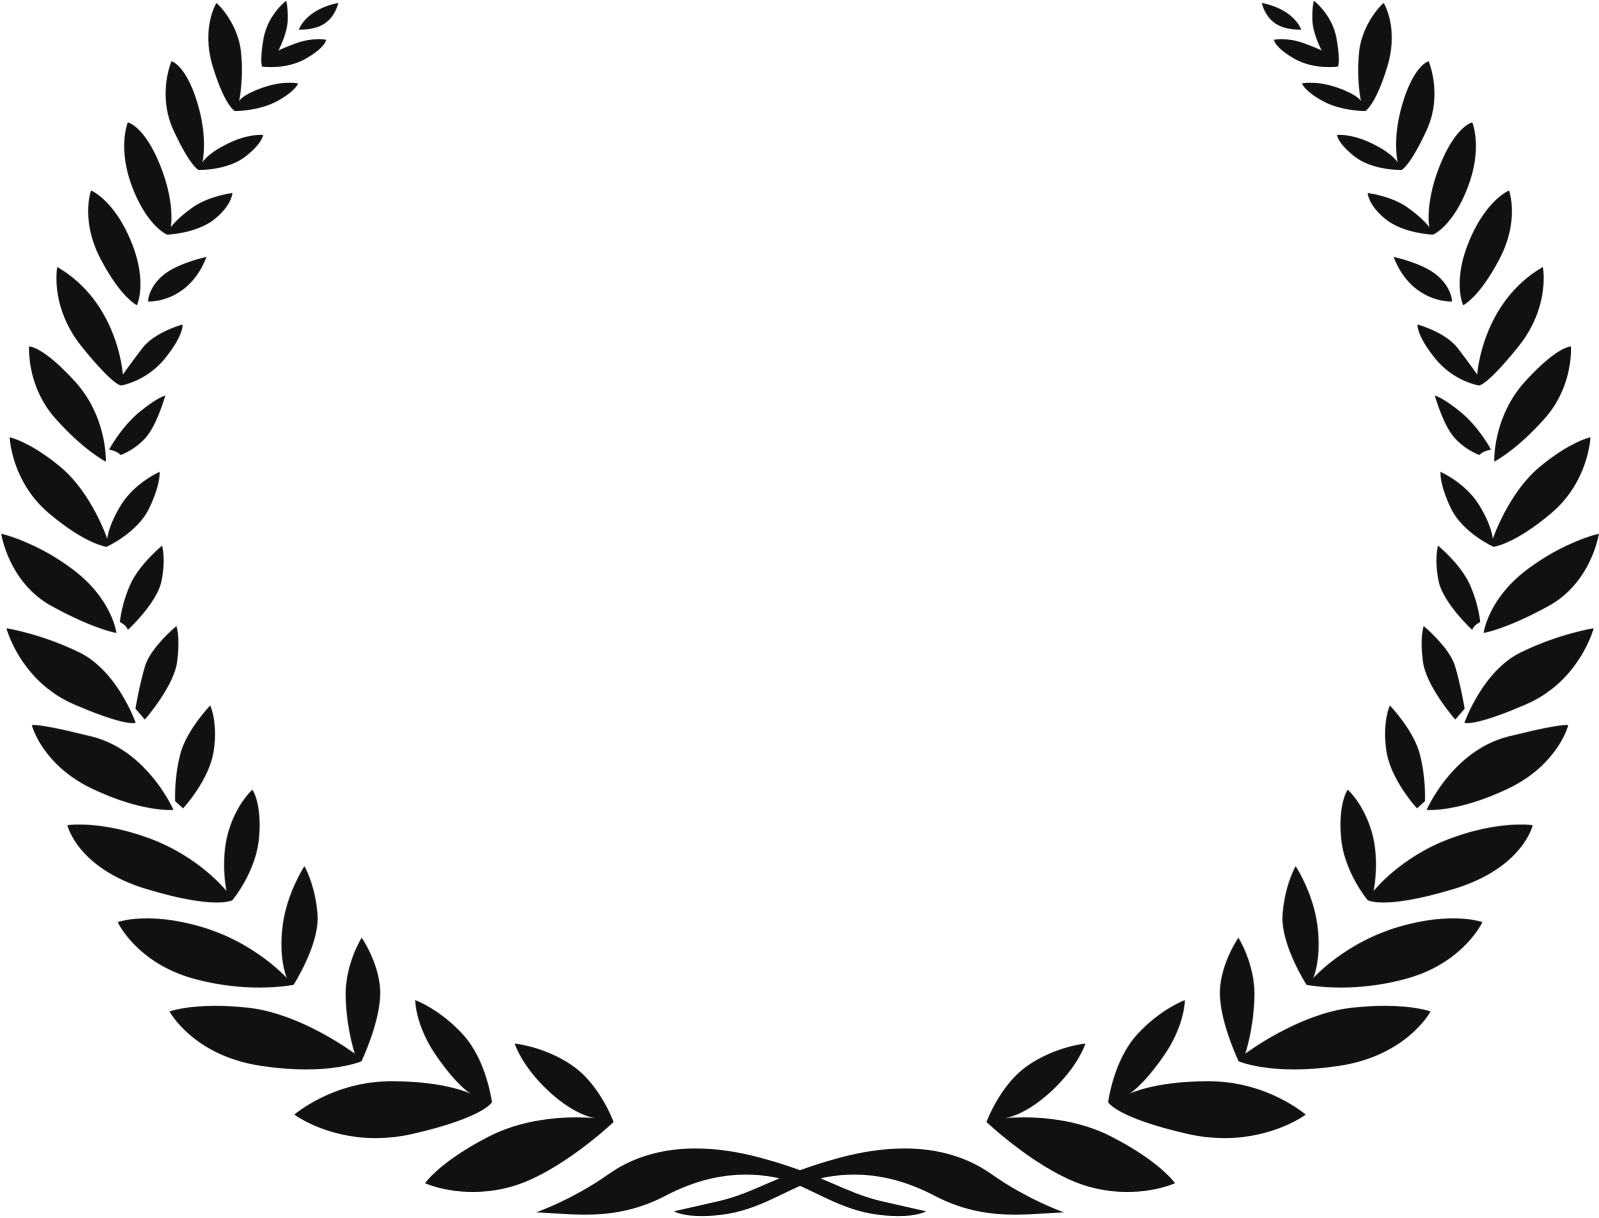 Full Frame Documentary Film Festival Riverrun International - Official Selection Full Frame 2017 (1599x1218)